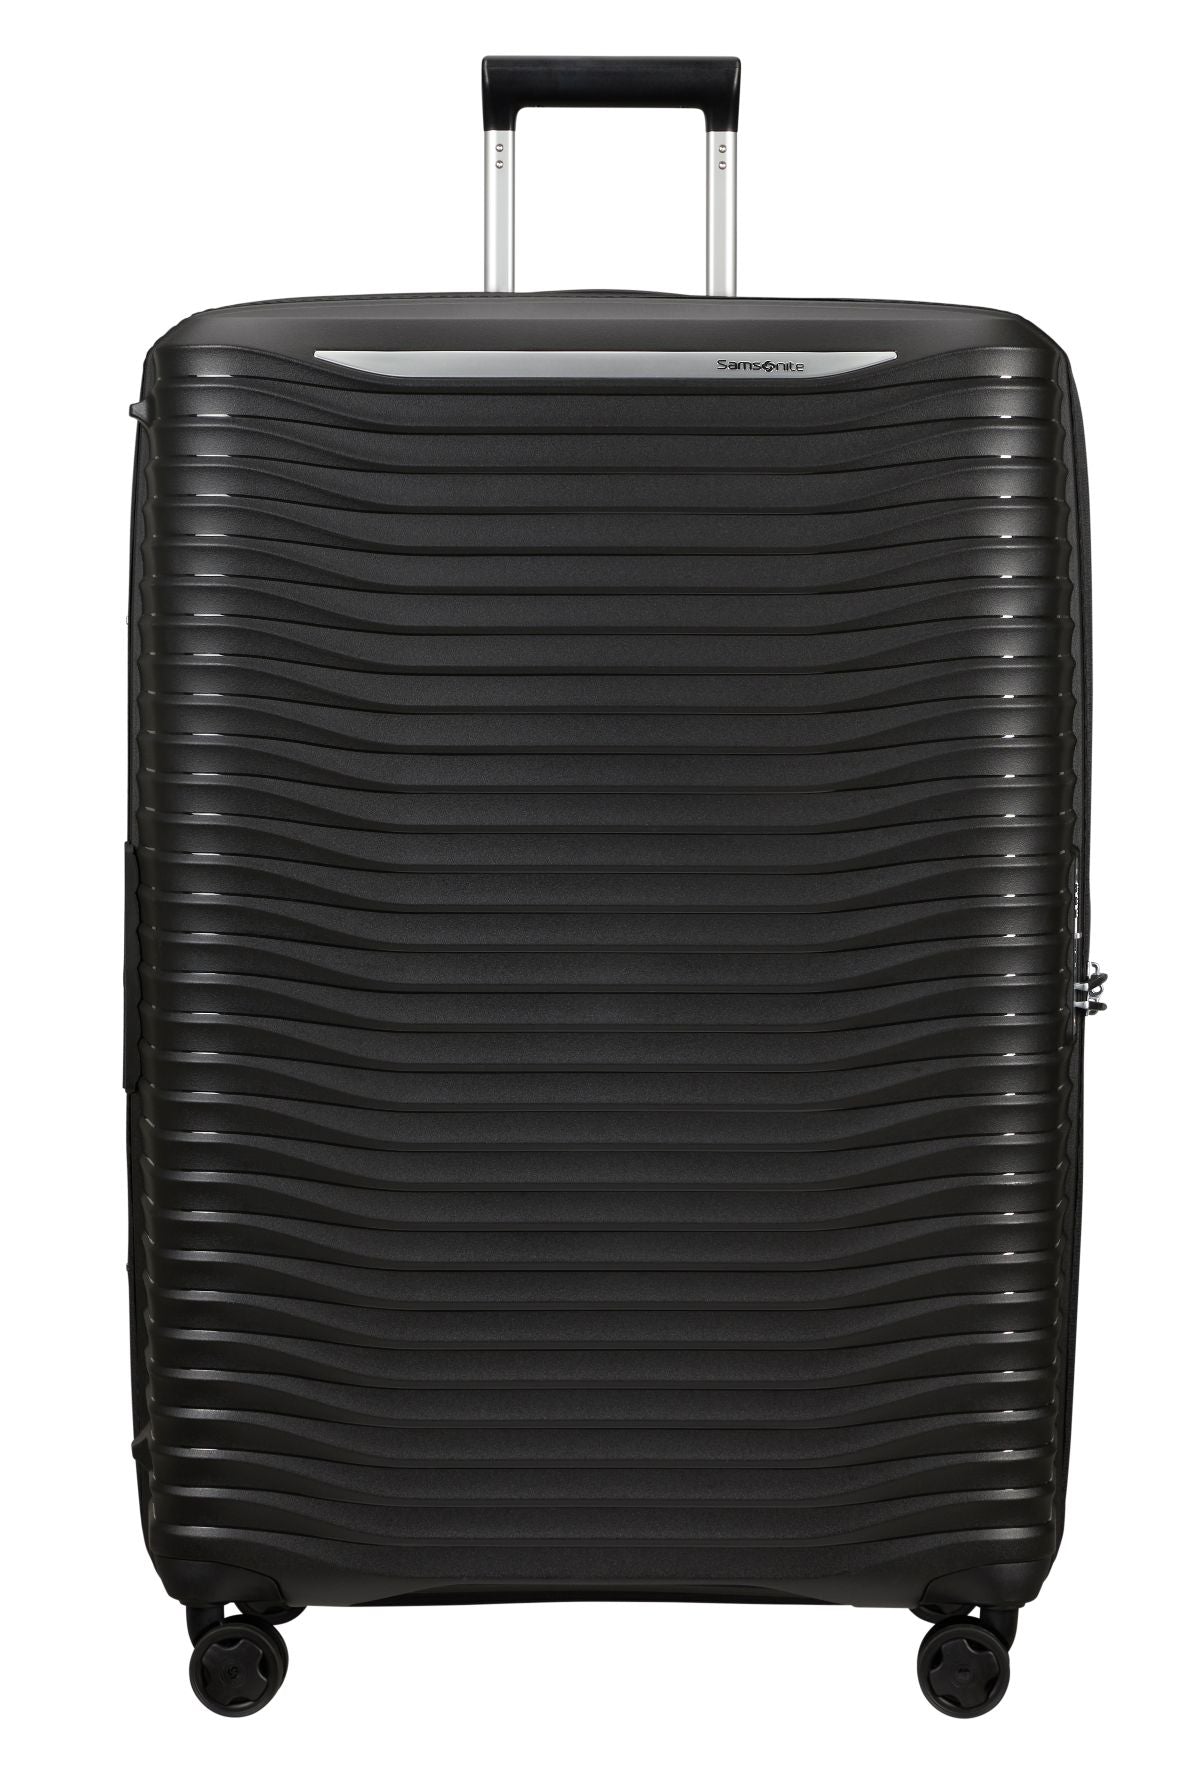 Samsonite - Upscape 81cm Large Suitcase - Black-1